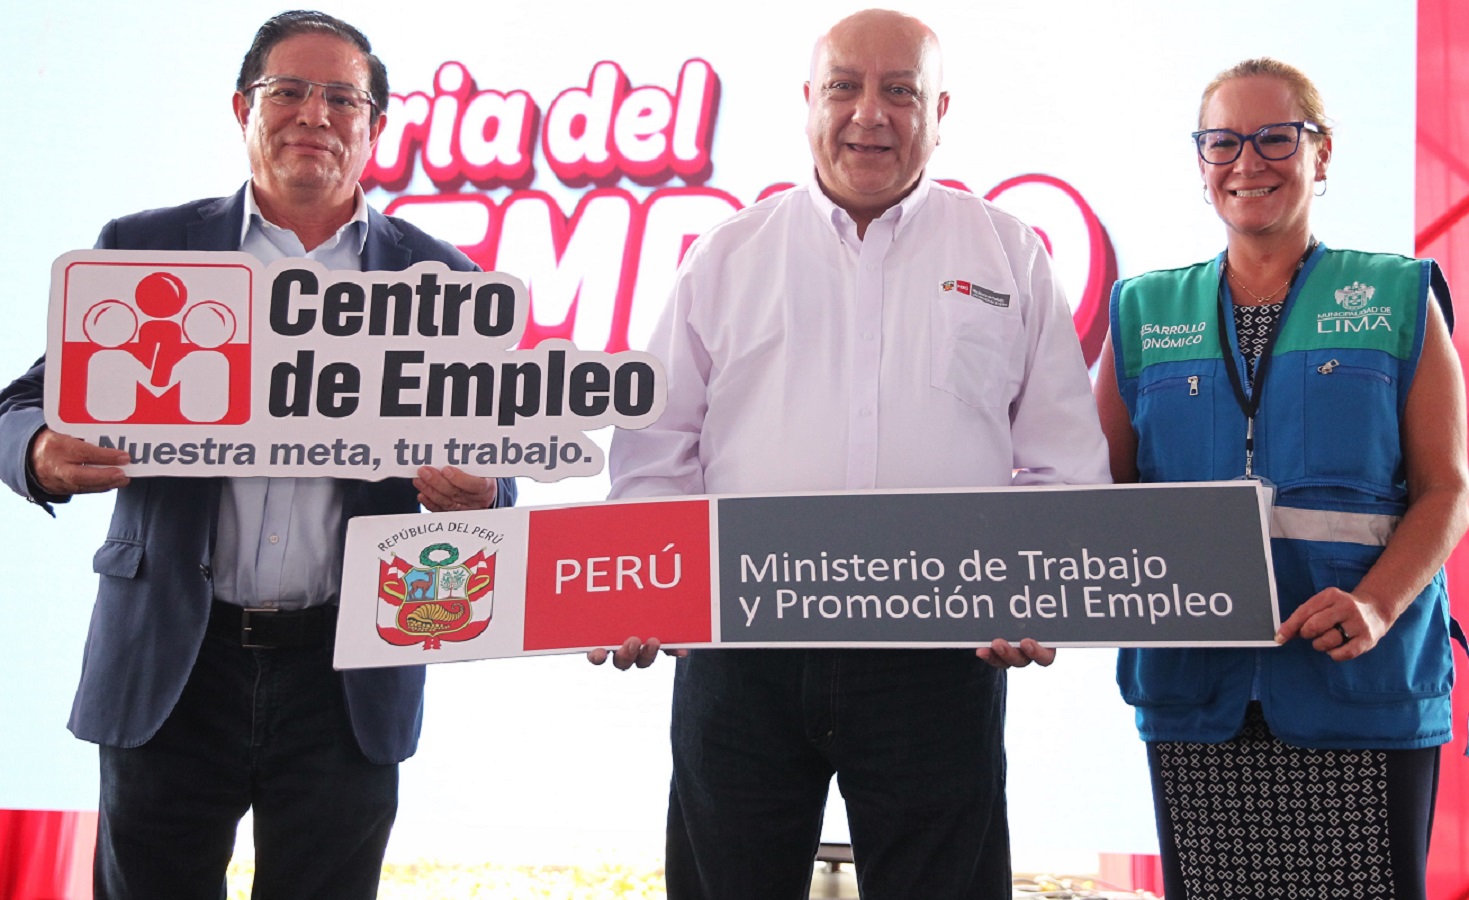 Más de 4 mil empleos para los peruanos en Feria del Empleo en La Victoria y la semana que viene hay otra jornada de empleos en Lima.